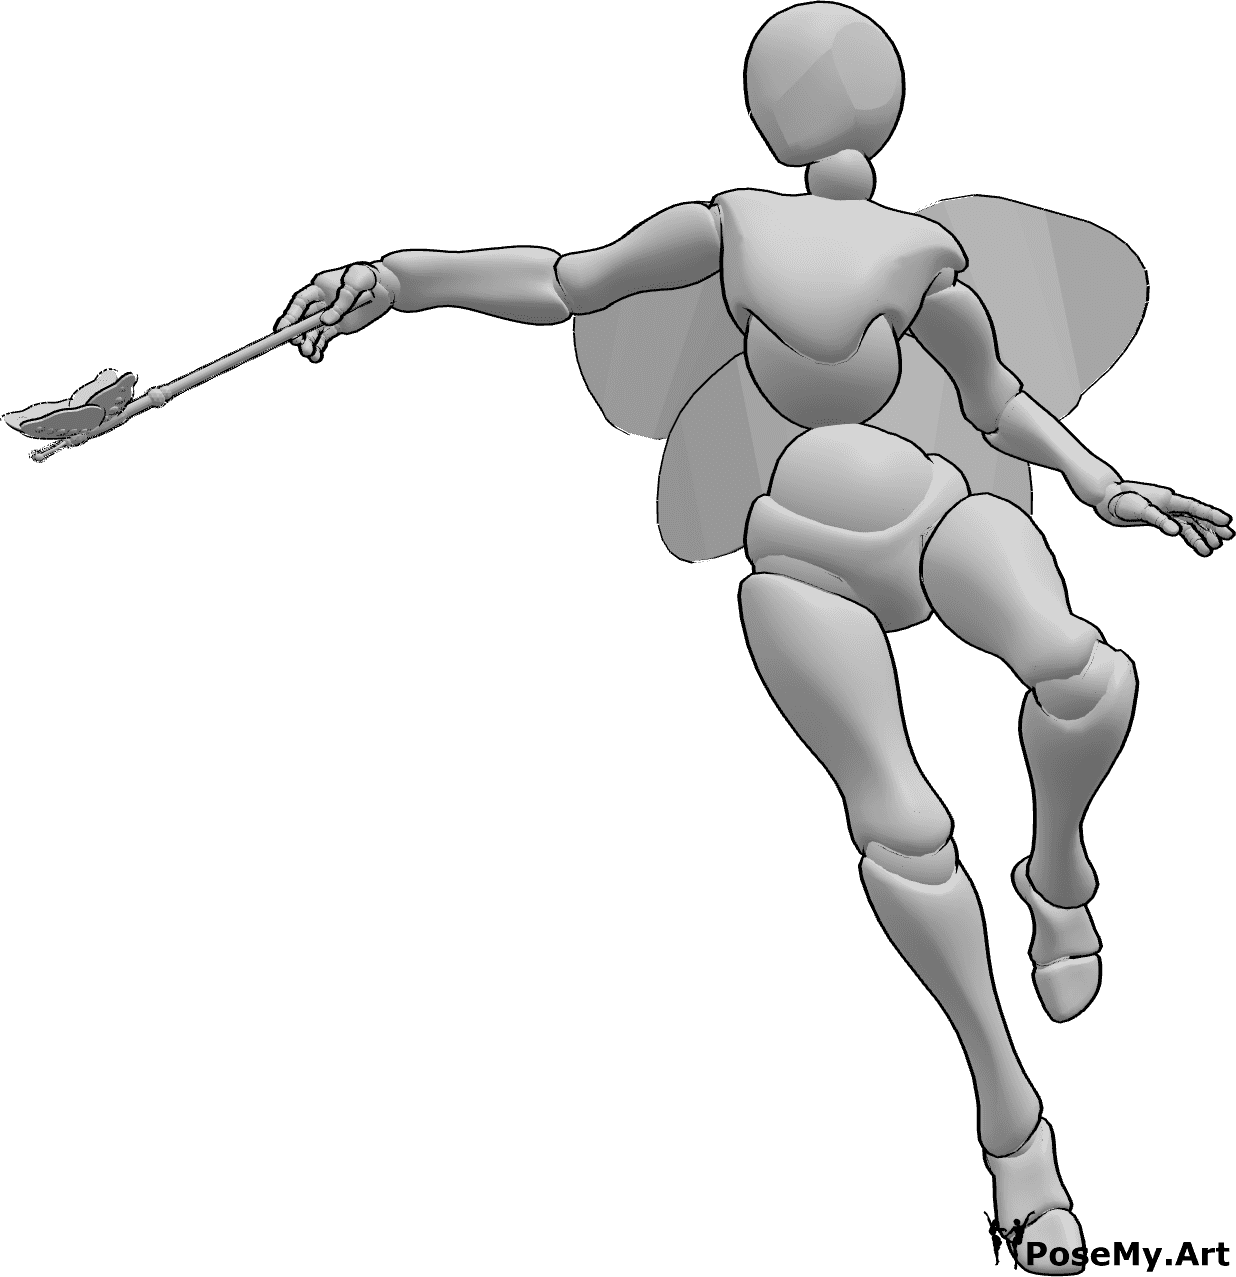 Referência de poses- Pose mágica de fada - Uma fada está a voar e a lançar um feitiço com a sua varinha de fada na mão direita